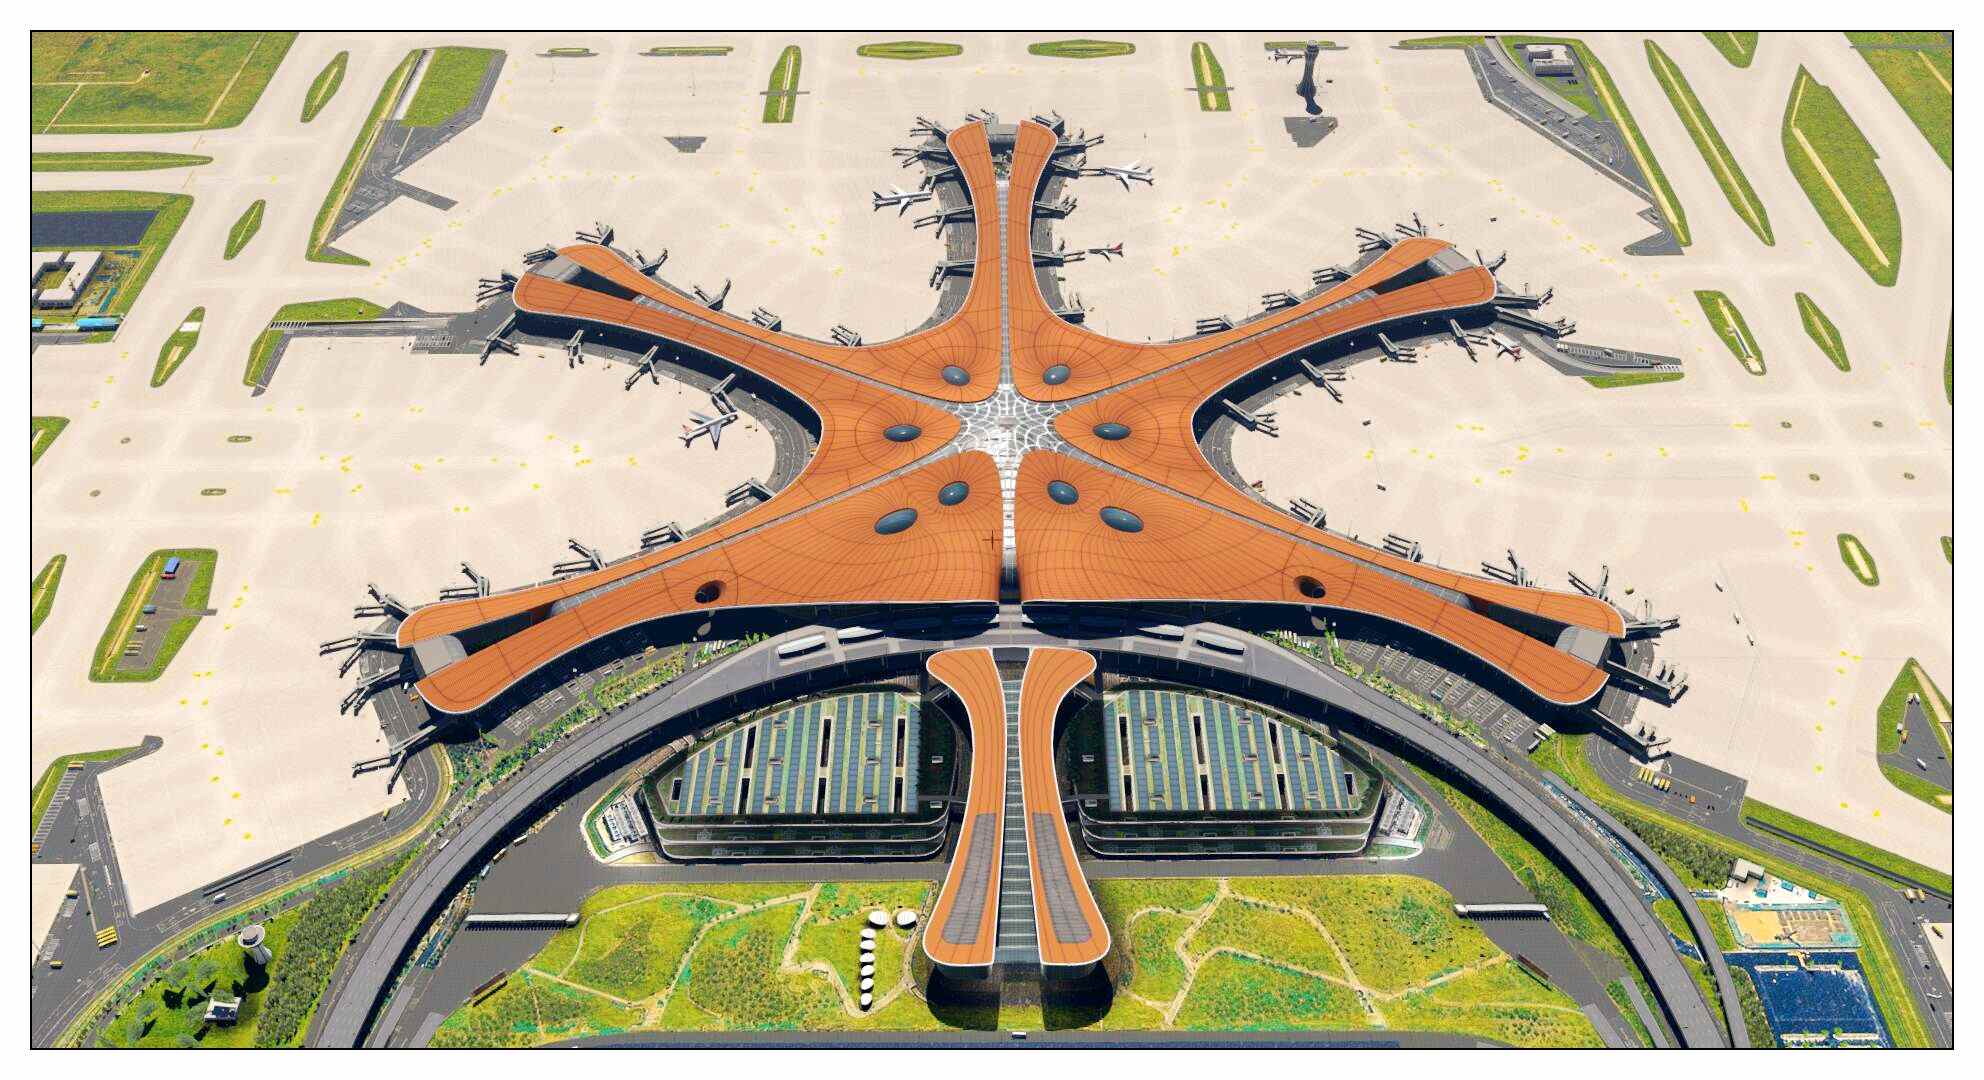 【X-Plane】ZBAD北京大兴国际机场-正式发布-2118 